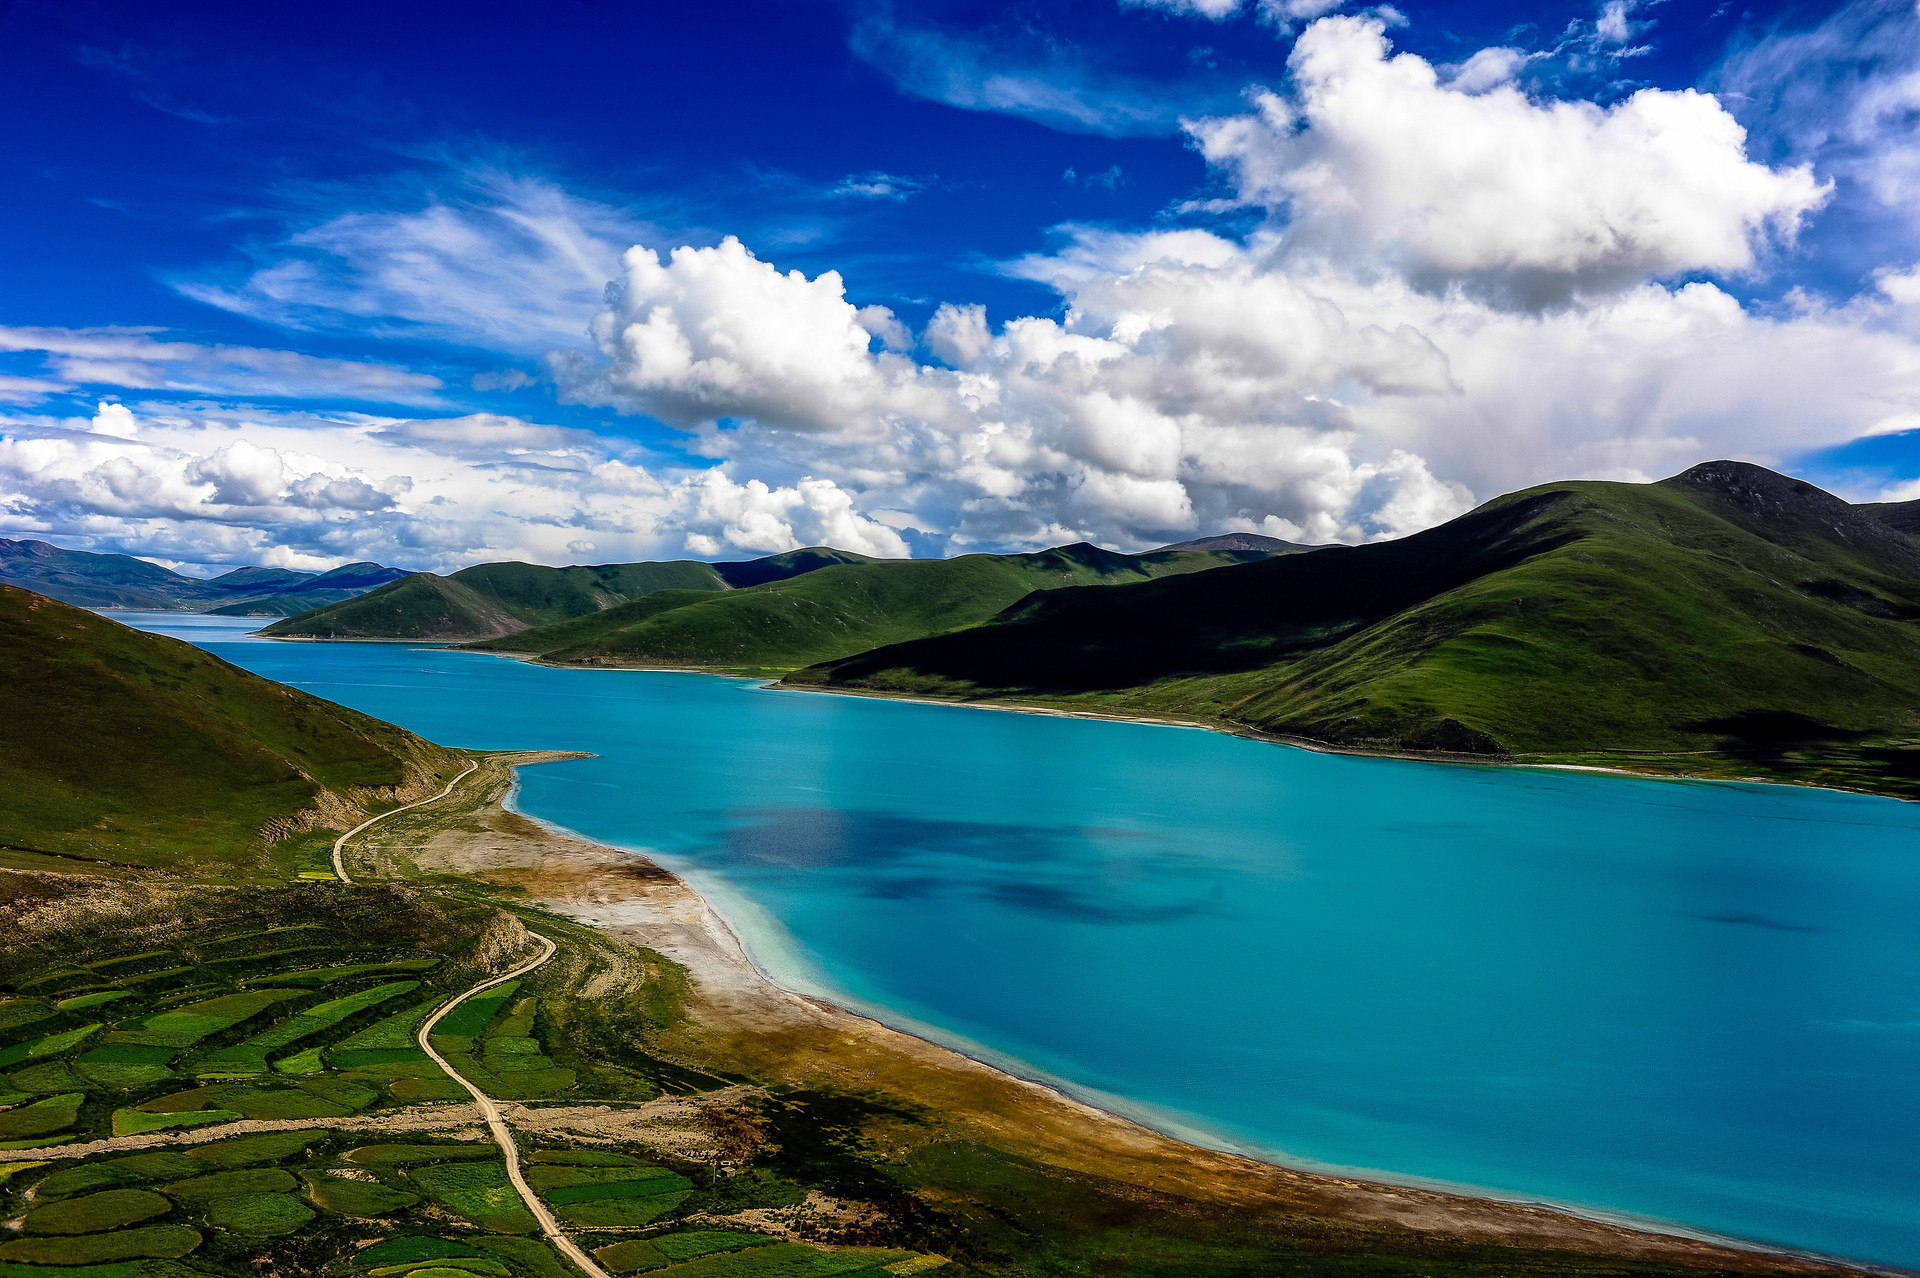 【尊享西藏】<林芝雅鲁藏布大峡谷、巴松措、布达拉宫、大昭寺、羊湖、鲁朗林海往返6天>